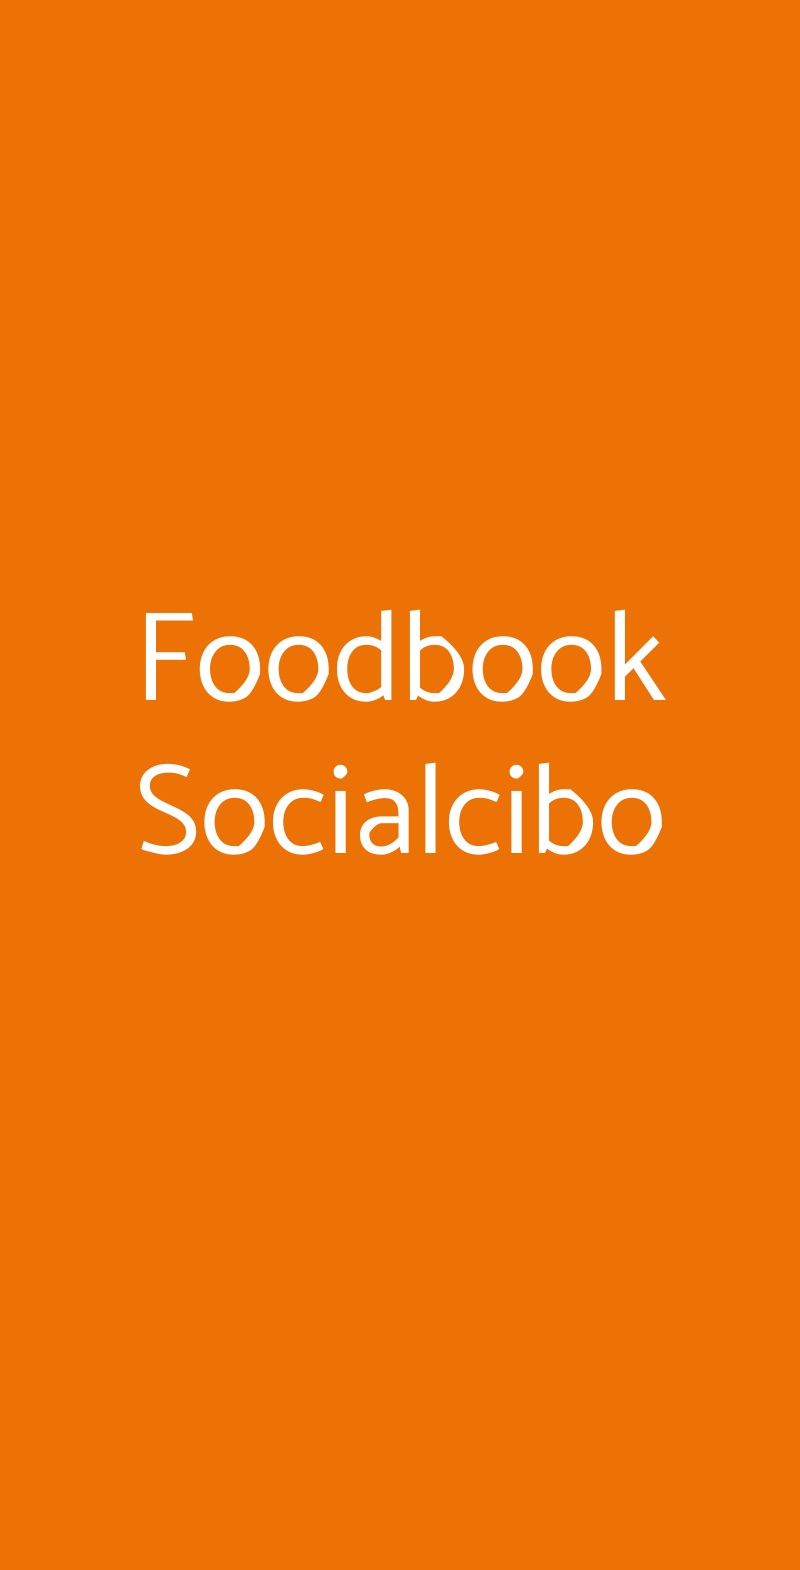 Foodbook Socialcibo Civitanova Marche menù 1 pagina